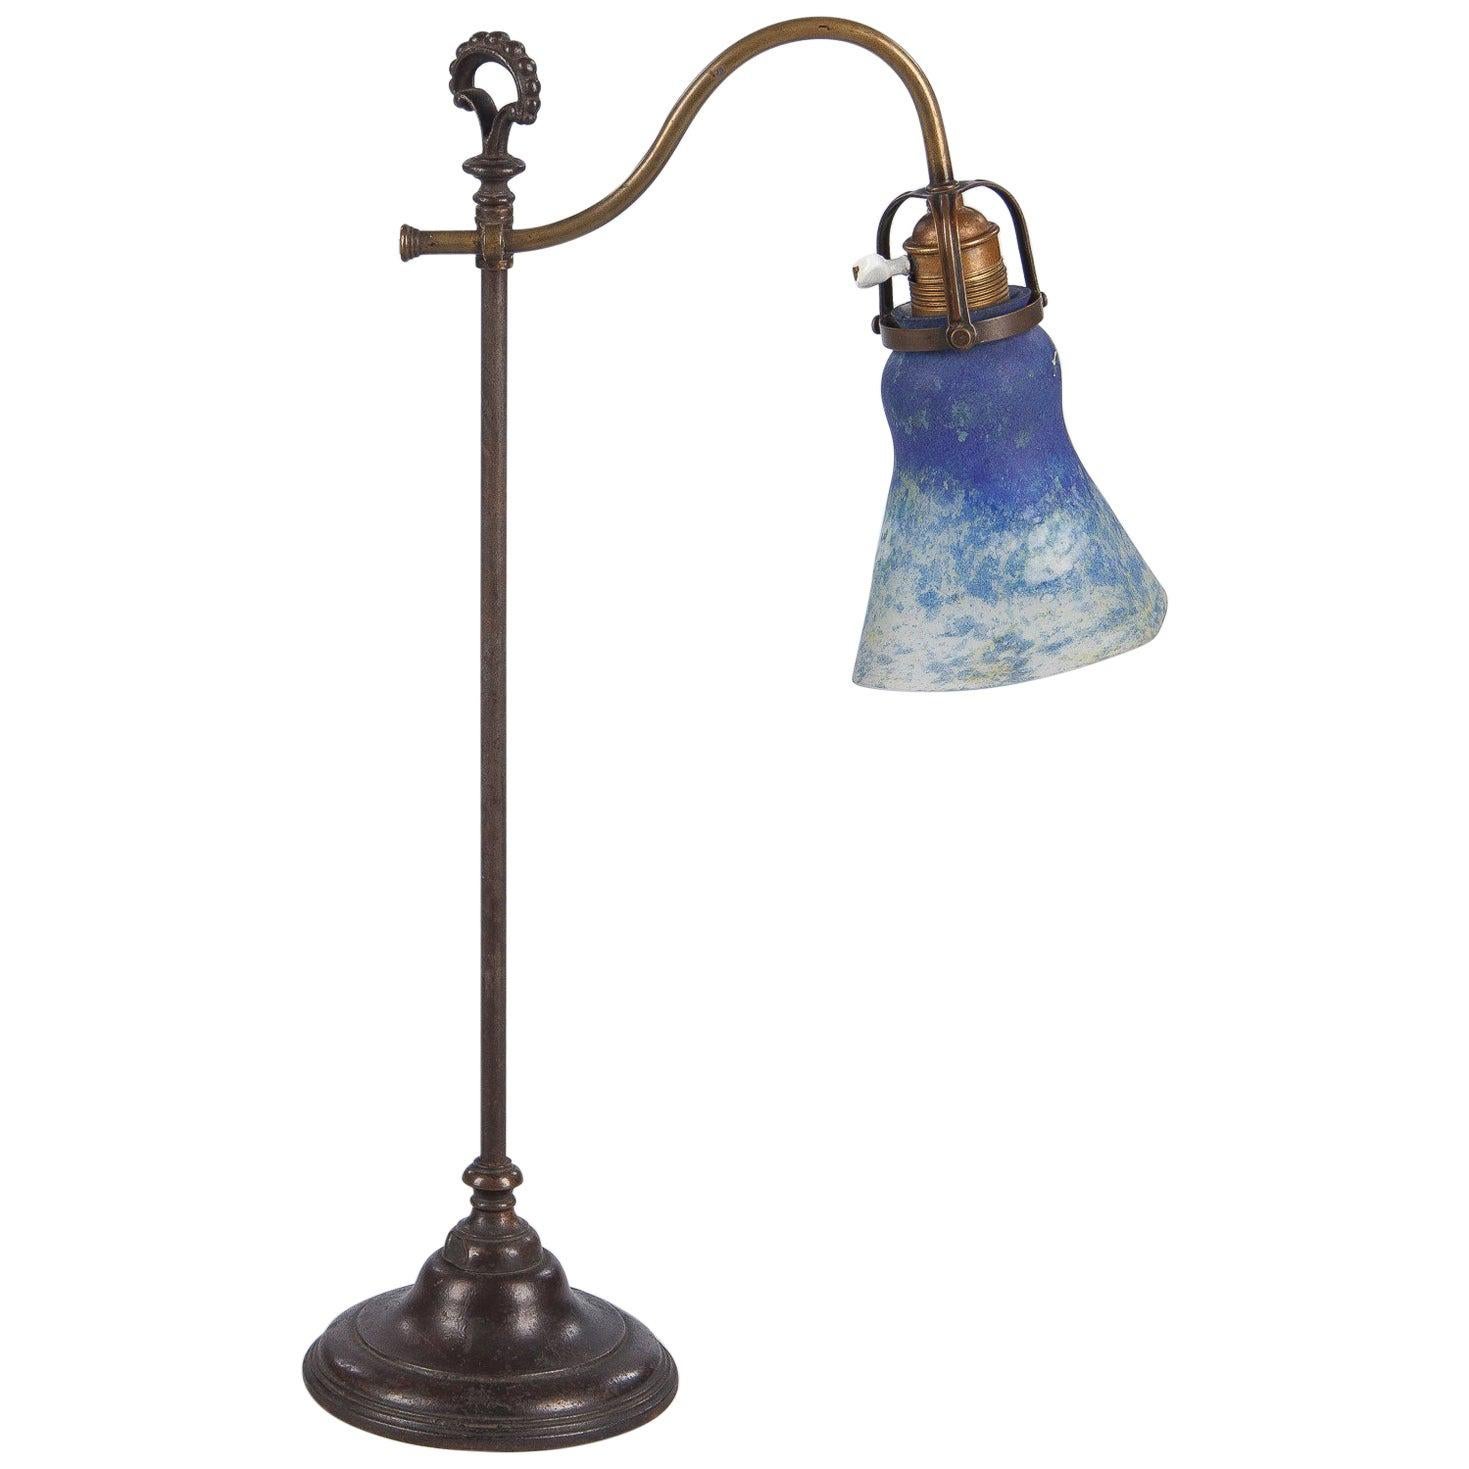 French Daum Nancy Signed Art Nouveau Glass Desk Lamp, 1900s